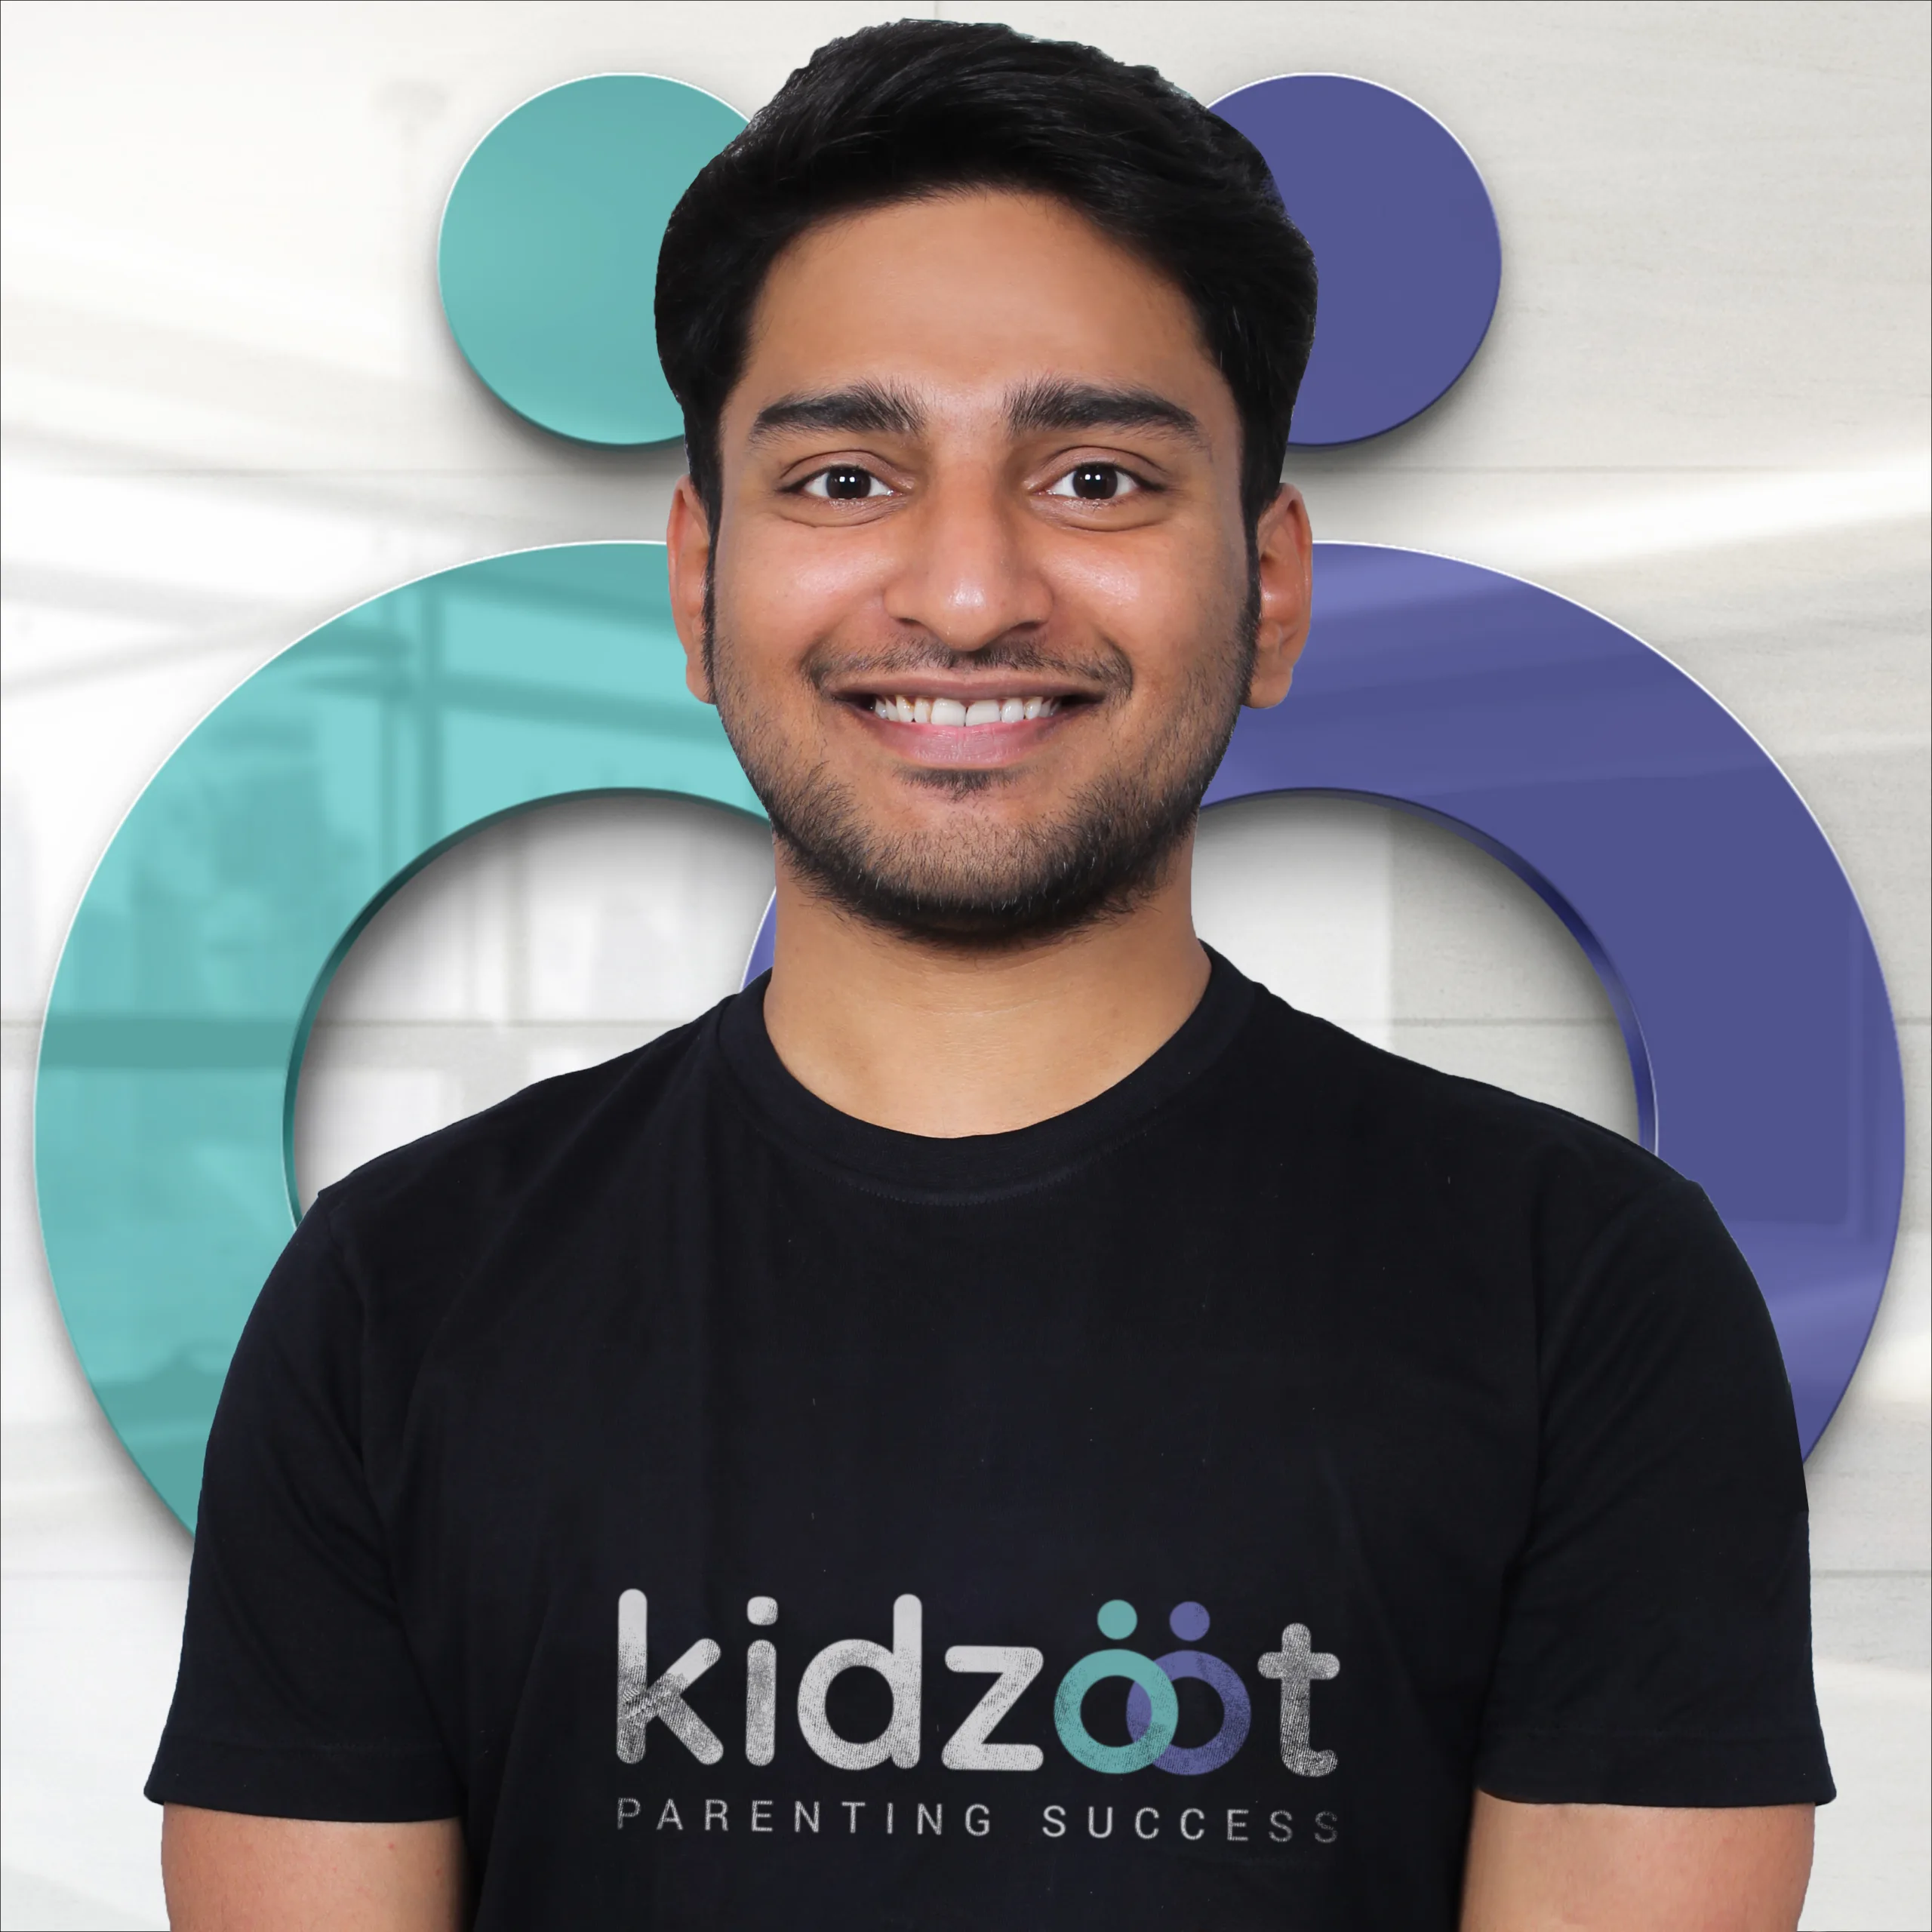 CEO OF KIDZOOT- Abhishek Sonkar